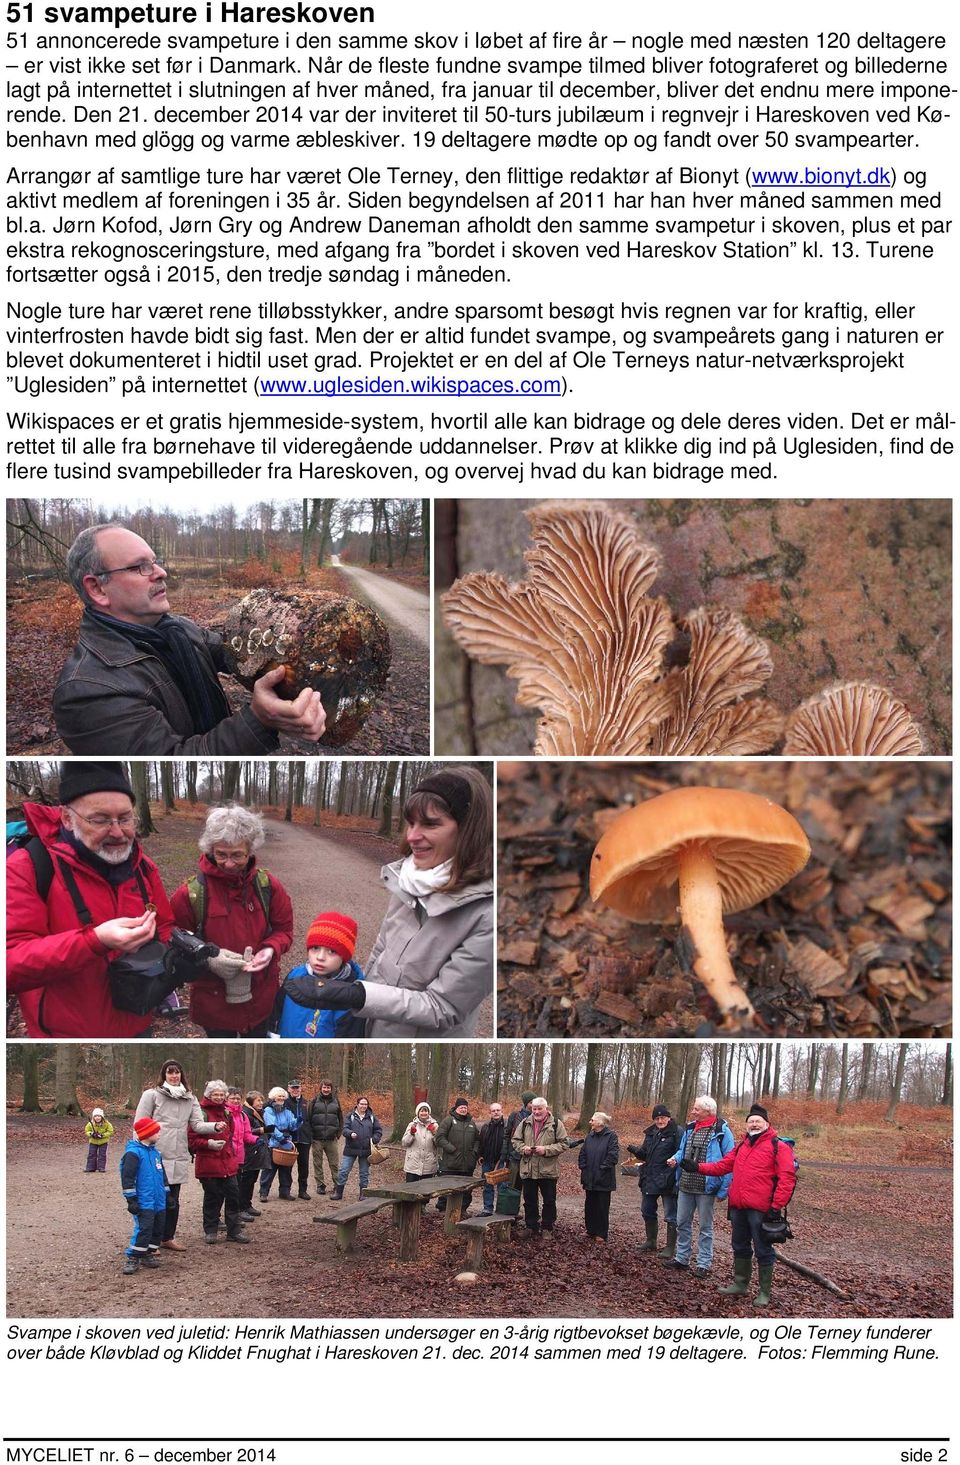 december 2014 var der inviteret til 50-turs jubilæum i regnvejr i Hareskoven ved København med glögg og varme æbleskiver. 19 deltagere mødte op og fandt over 50 svampearter.